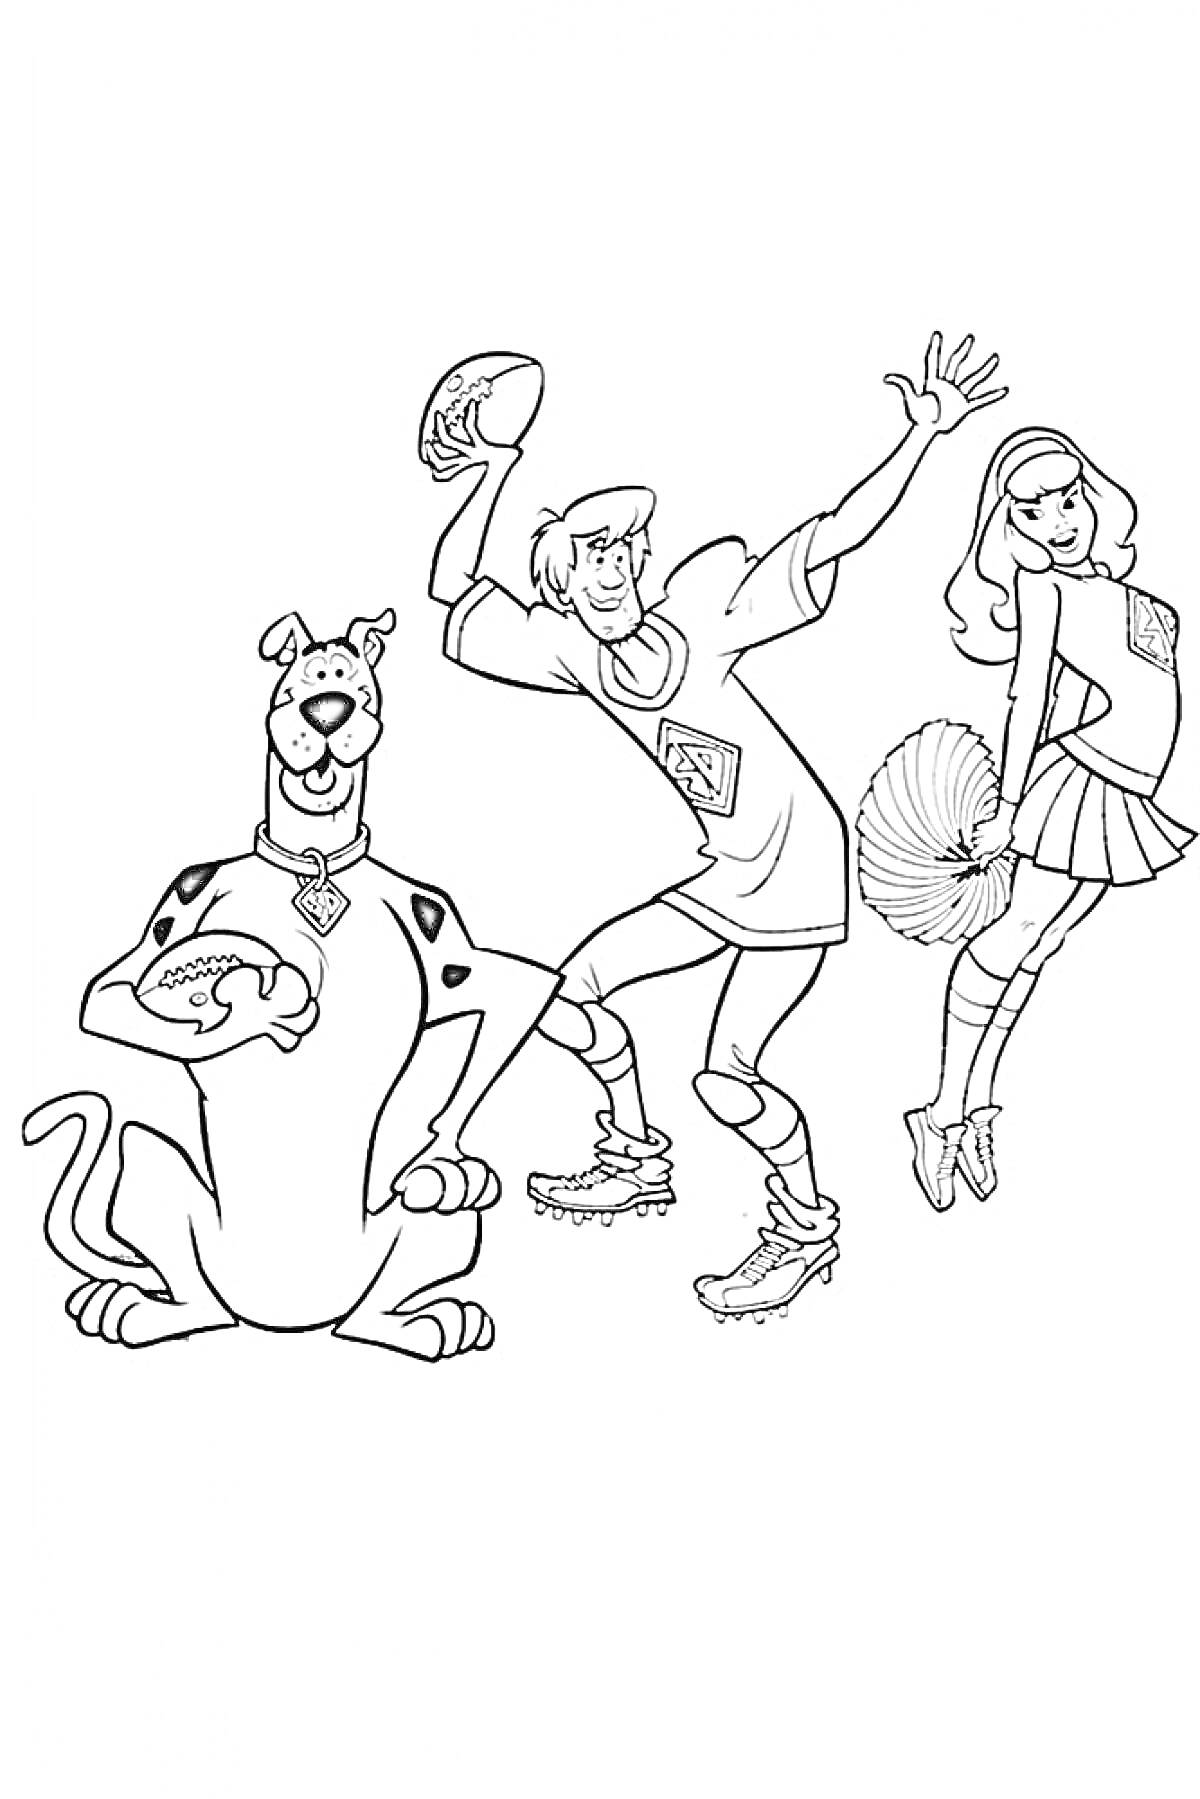 Раскраска Скуби Ду с футбольным мячом, персонаж в спортивной одежде с мячом для американского футбола, девочка в костюме черлидерши с помпонами